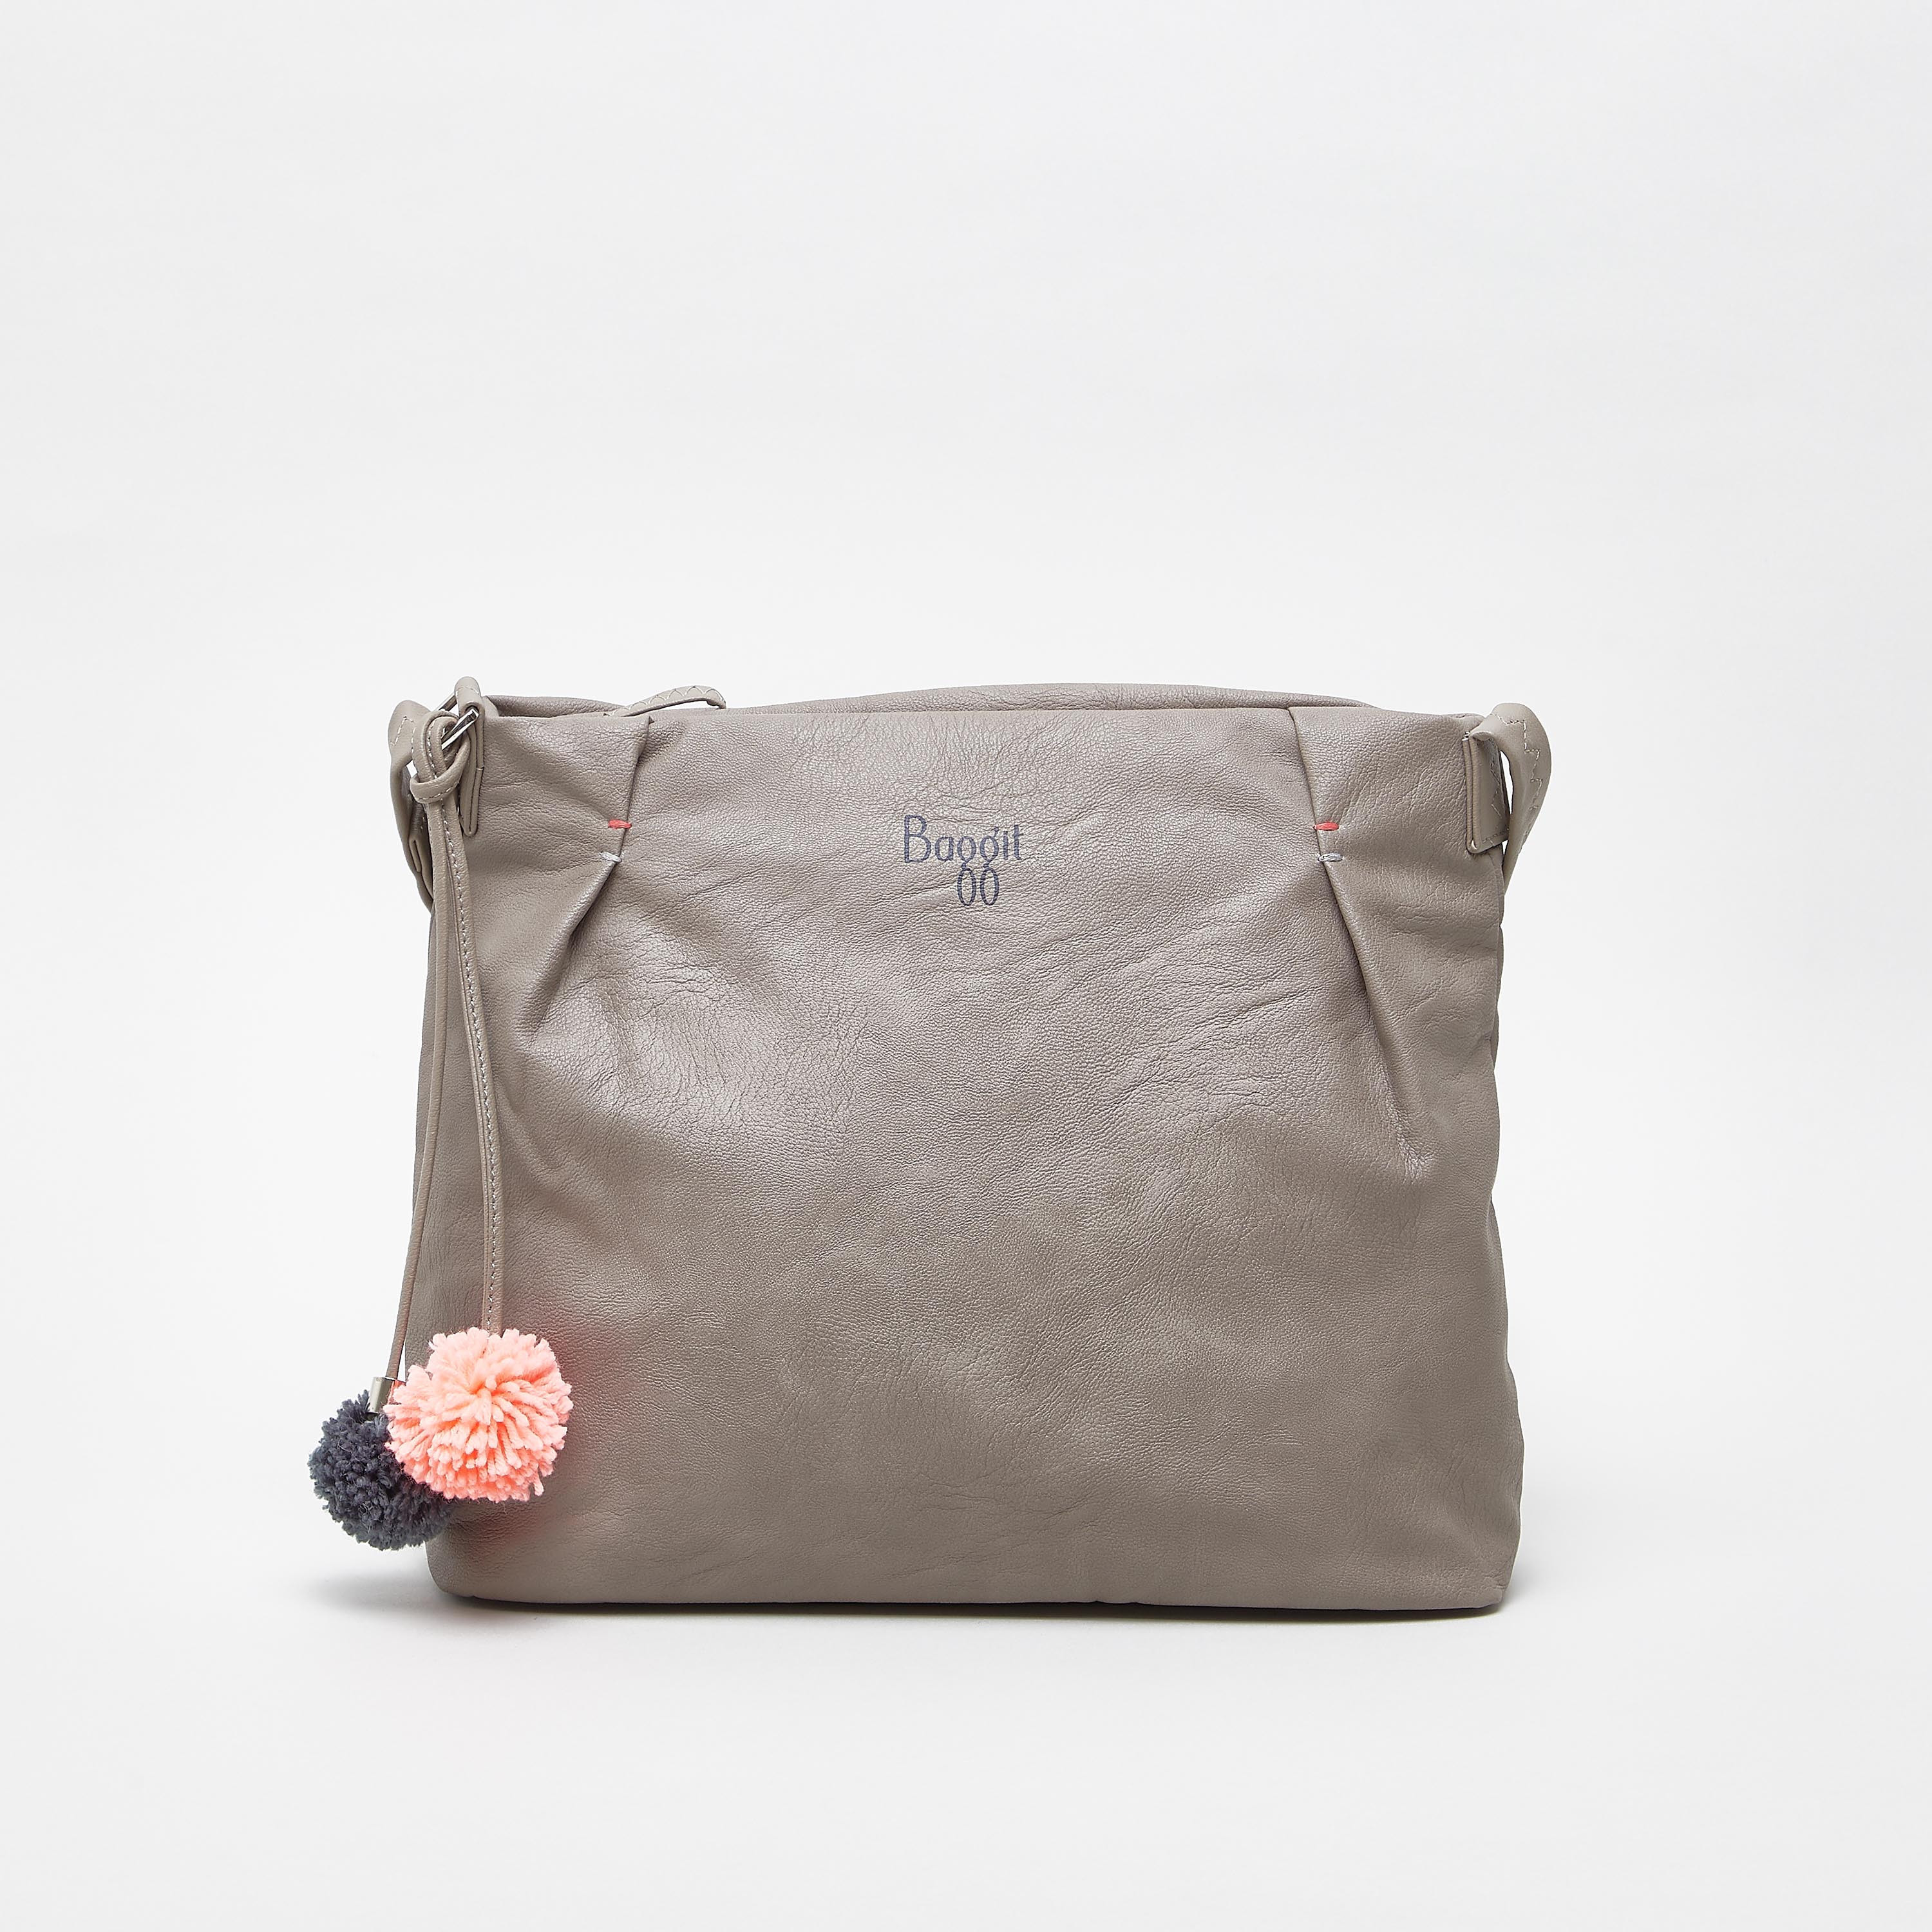 sling bag, baggit bags | Sling bag, Bags, Shopping bag